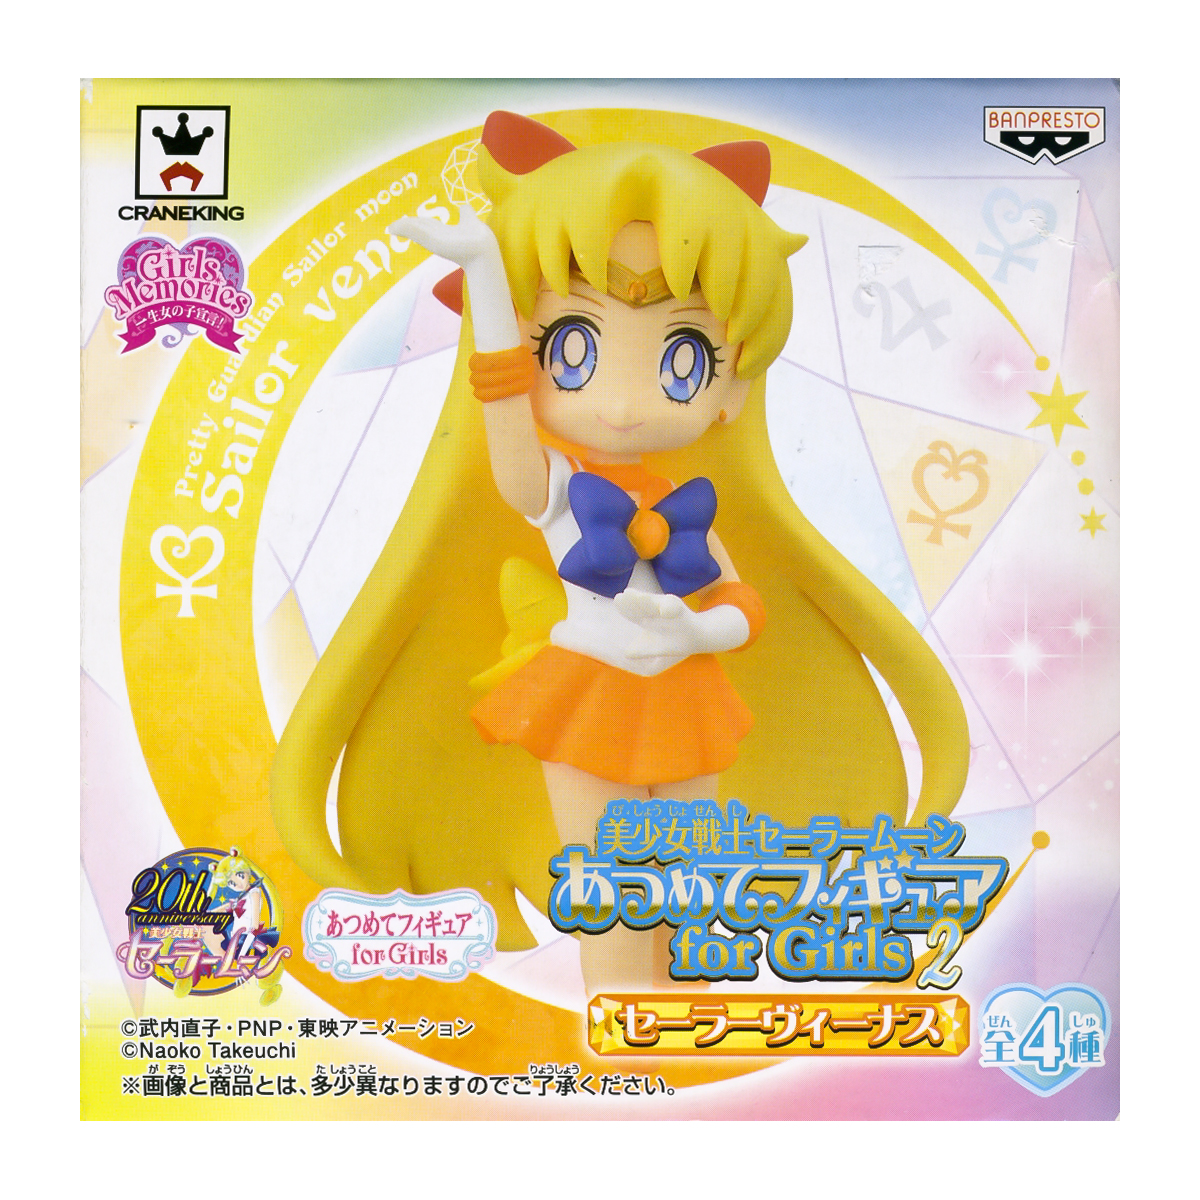 Sailor Venus Atsumete Trading Figure Banpresto Anime Statue Doll 20th Anniversary Special